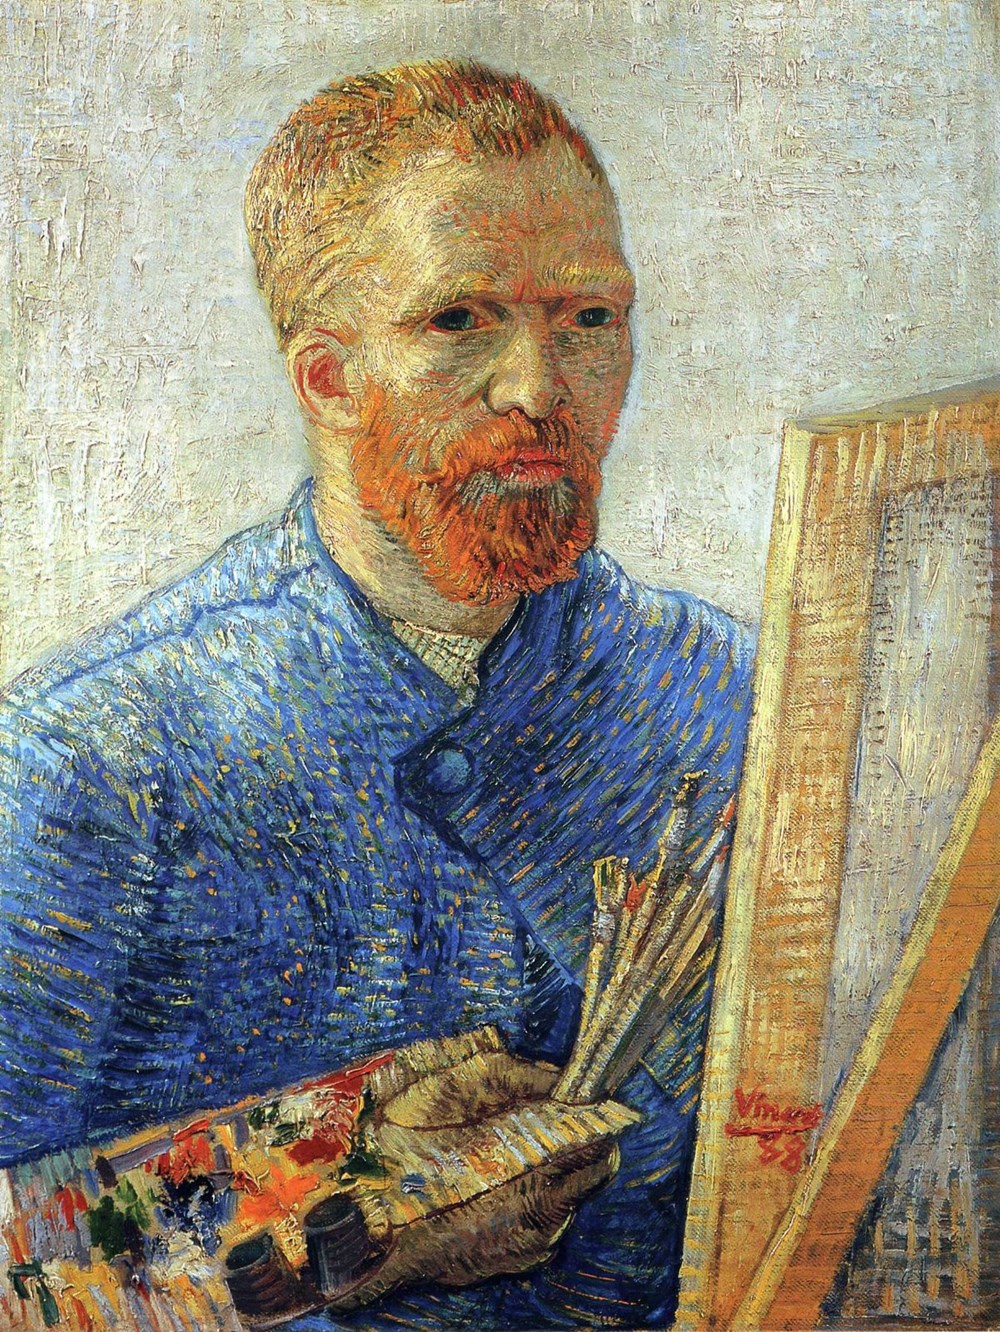 Ressam Vincent Van Gogh kulağını neden kesti? Van Gogh
şizofren mi dahi miydi? - 3